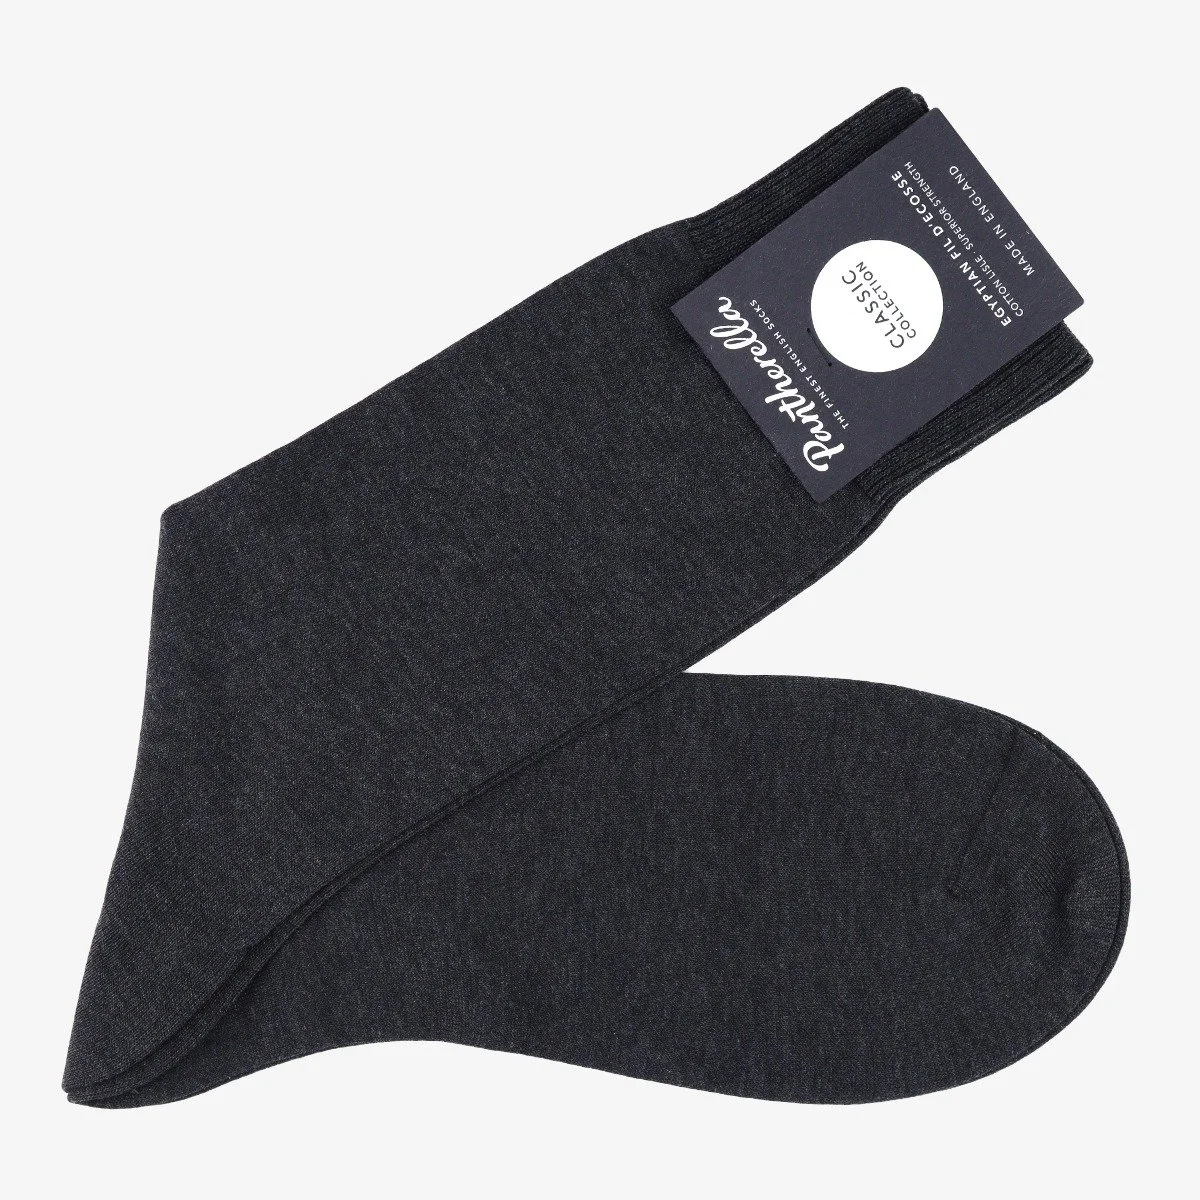 Pantherella Sackville dark grey men's socks